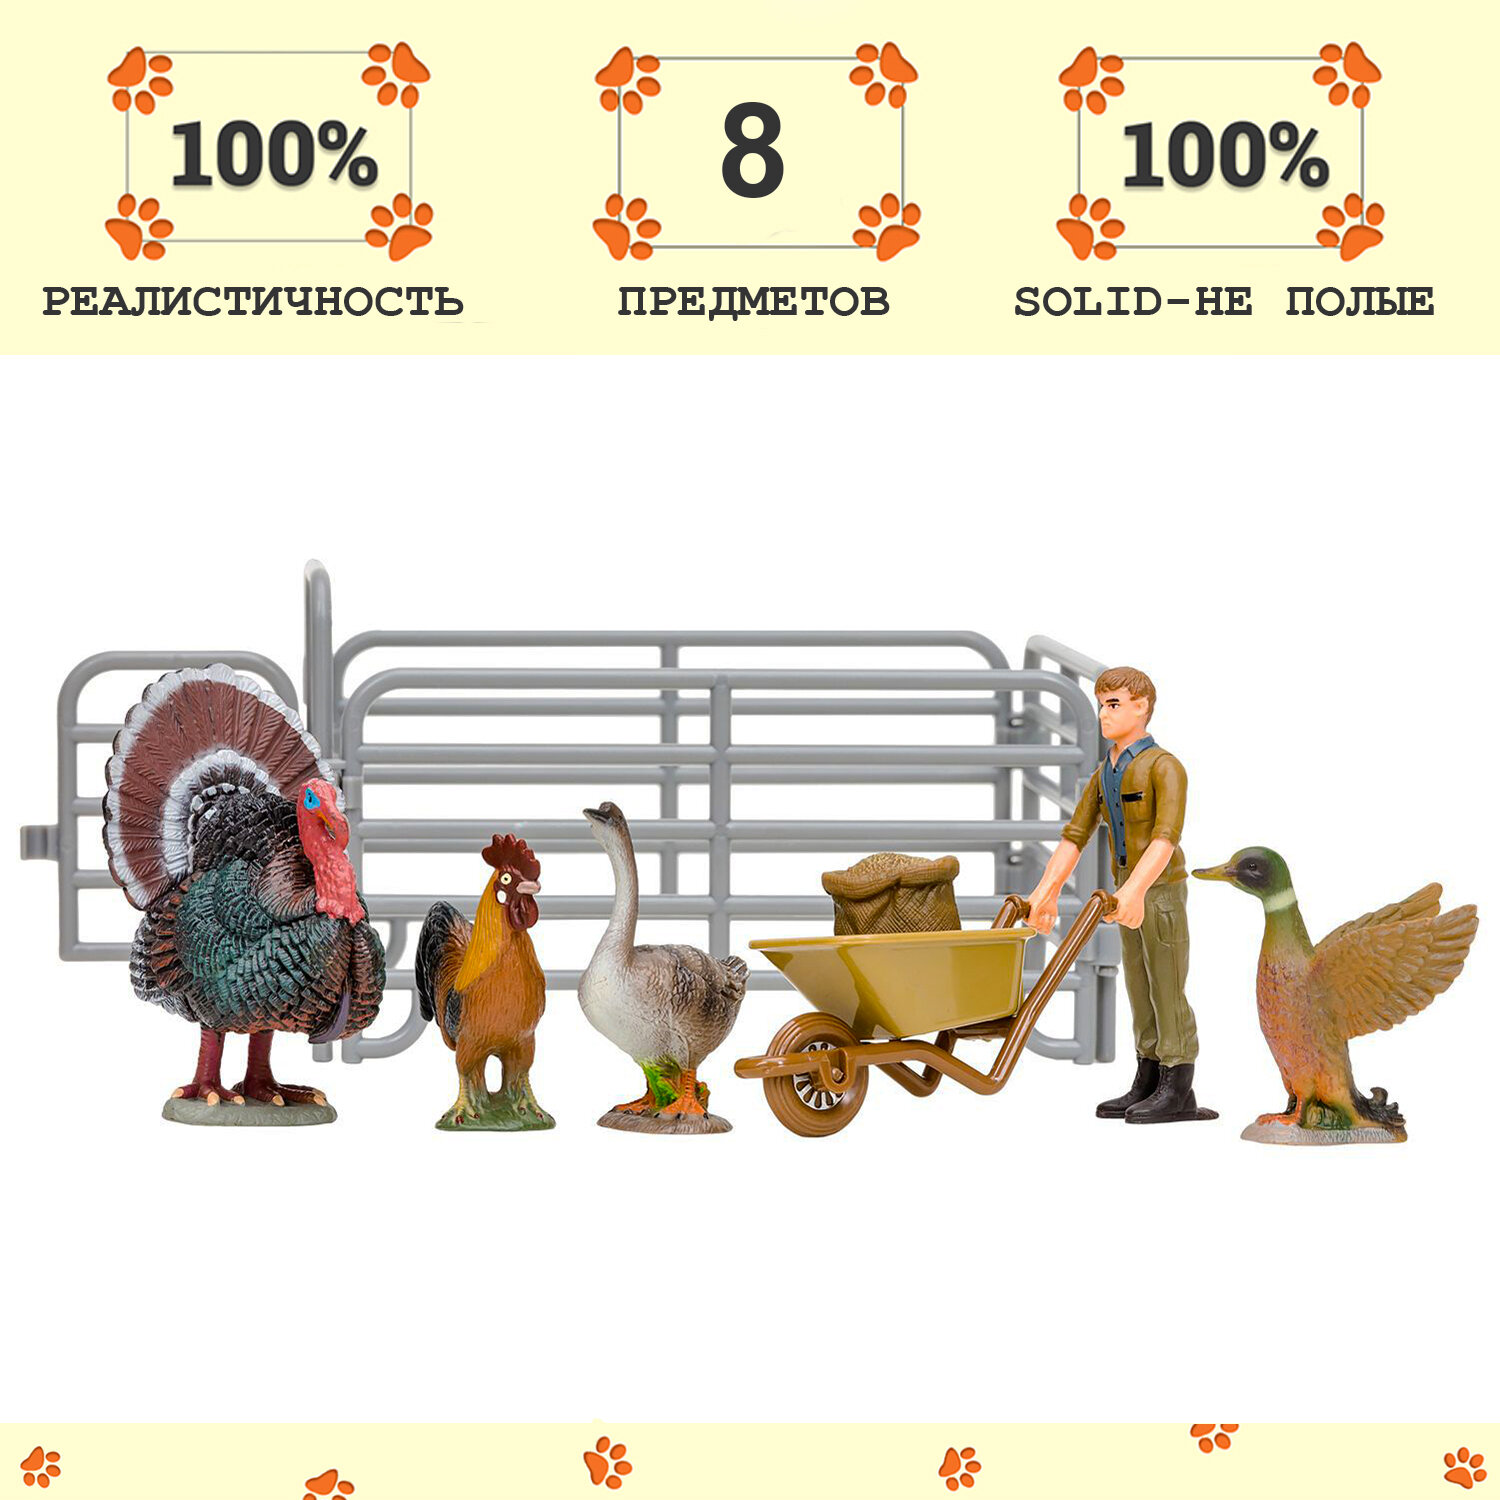 Игрушки фигурки в наборе серии "На ферме", 8 предметов (фермер, индюк, петух, гусь, утка, ограждение-загон, инвентарь)